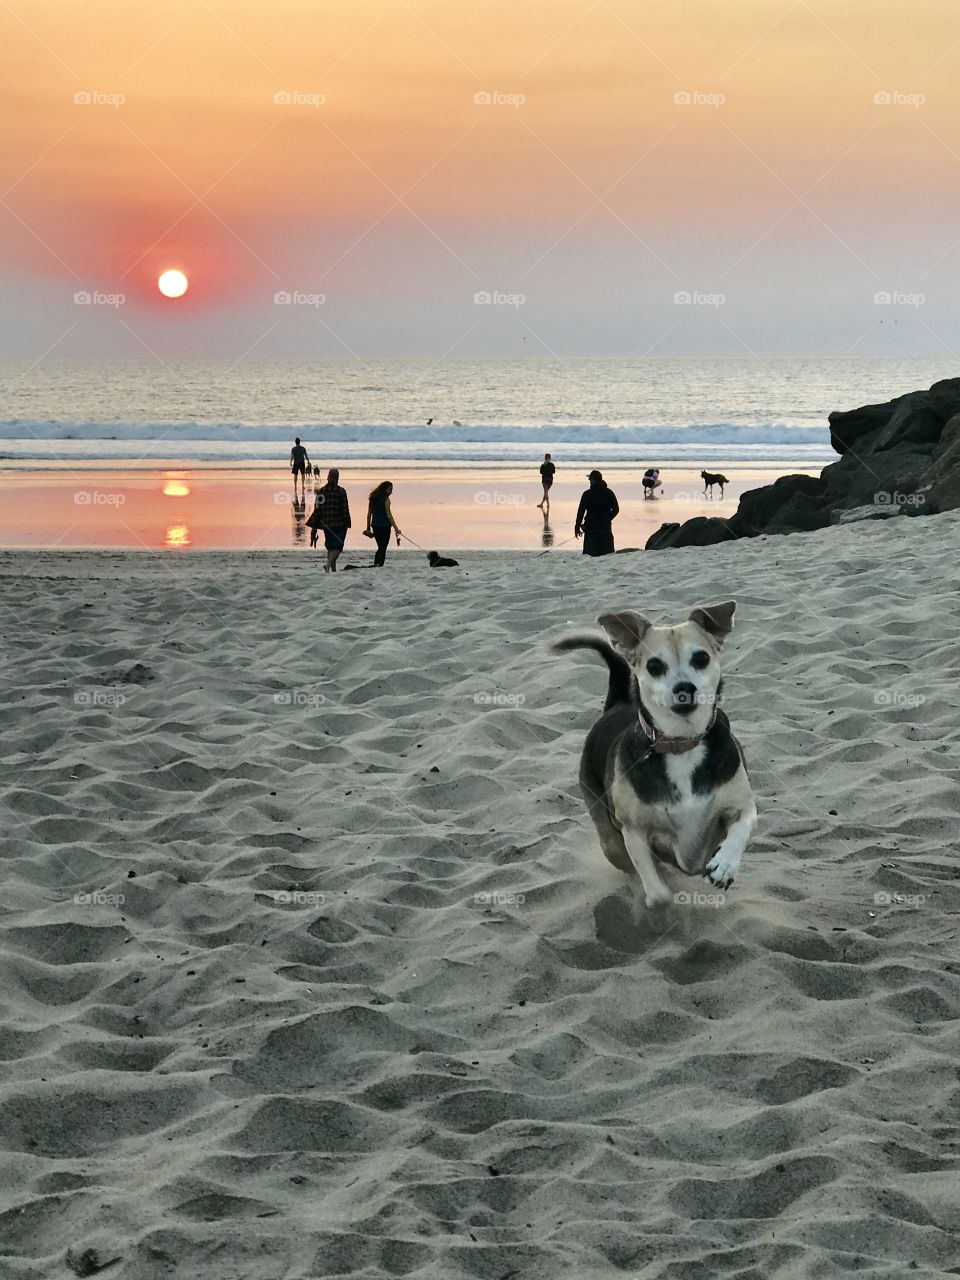 Dog’s beach sunset 